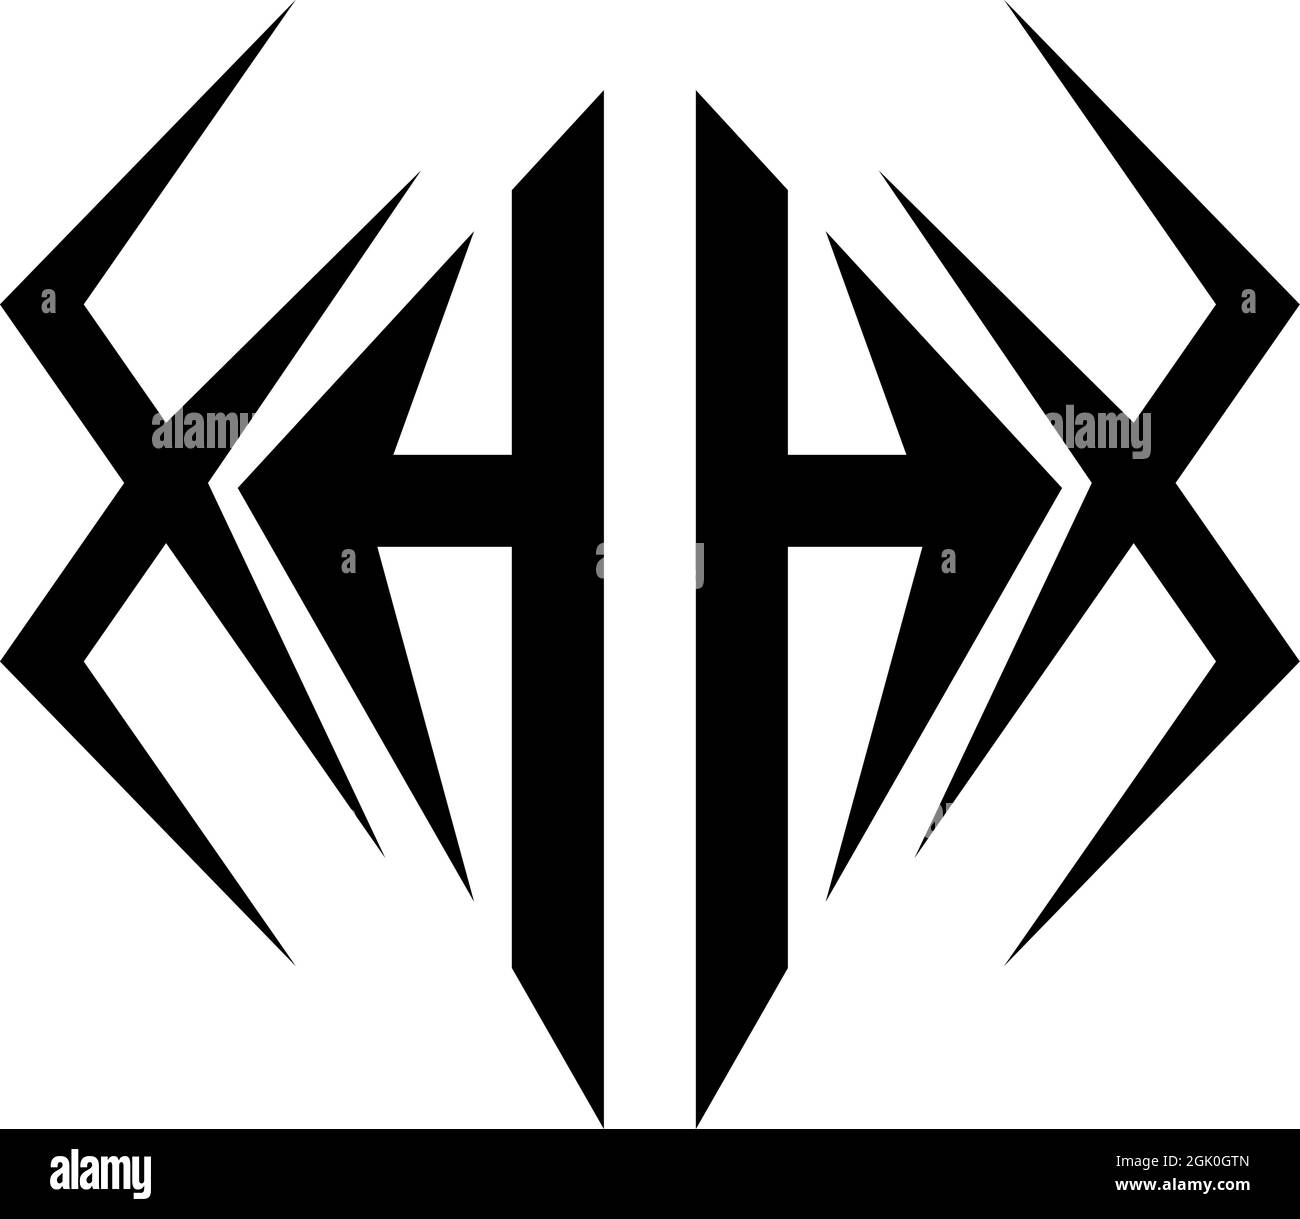 Design iniziale del logo HH con stile Cool, branding aziendale con logo. Illustrazione Vettoriale